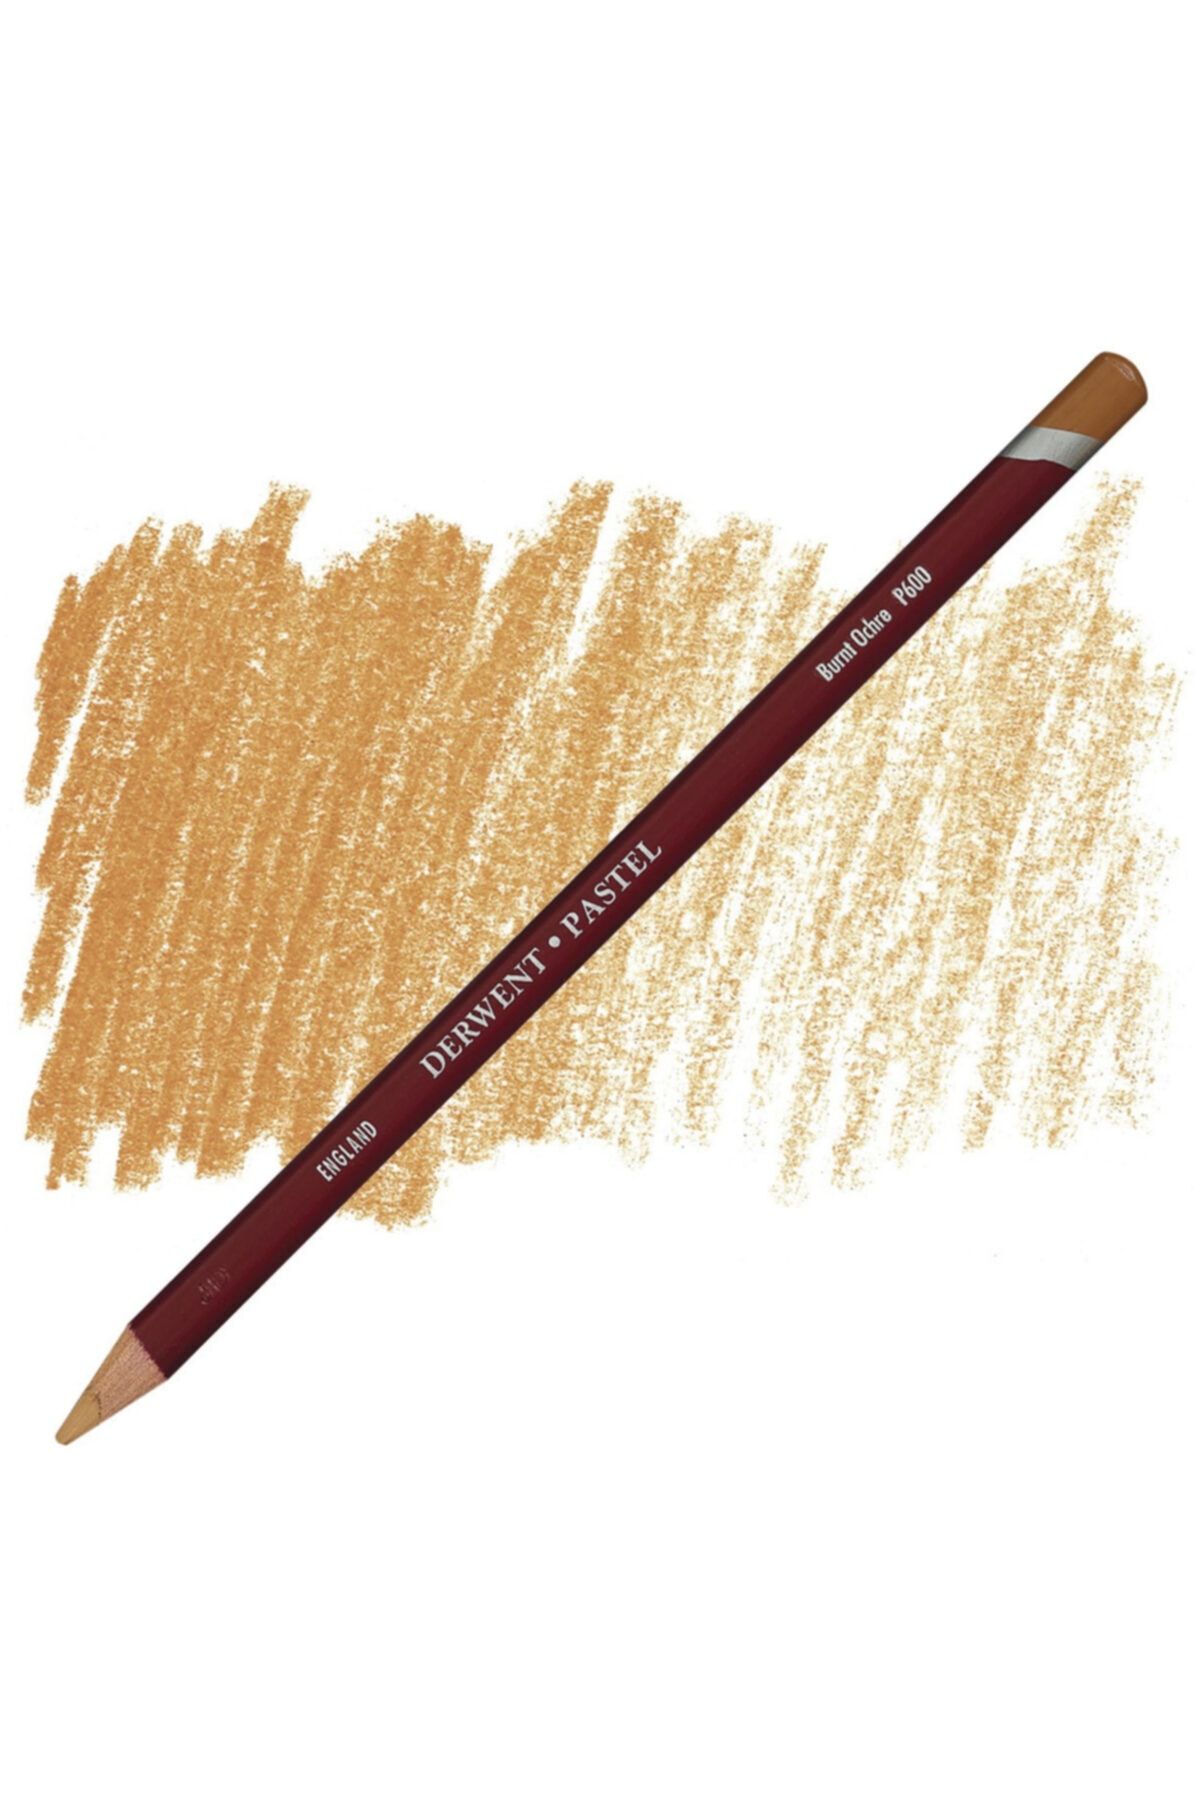 Derwent Pastel Pencil - Burnt Ochre P600